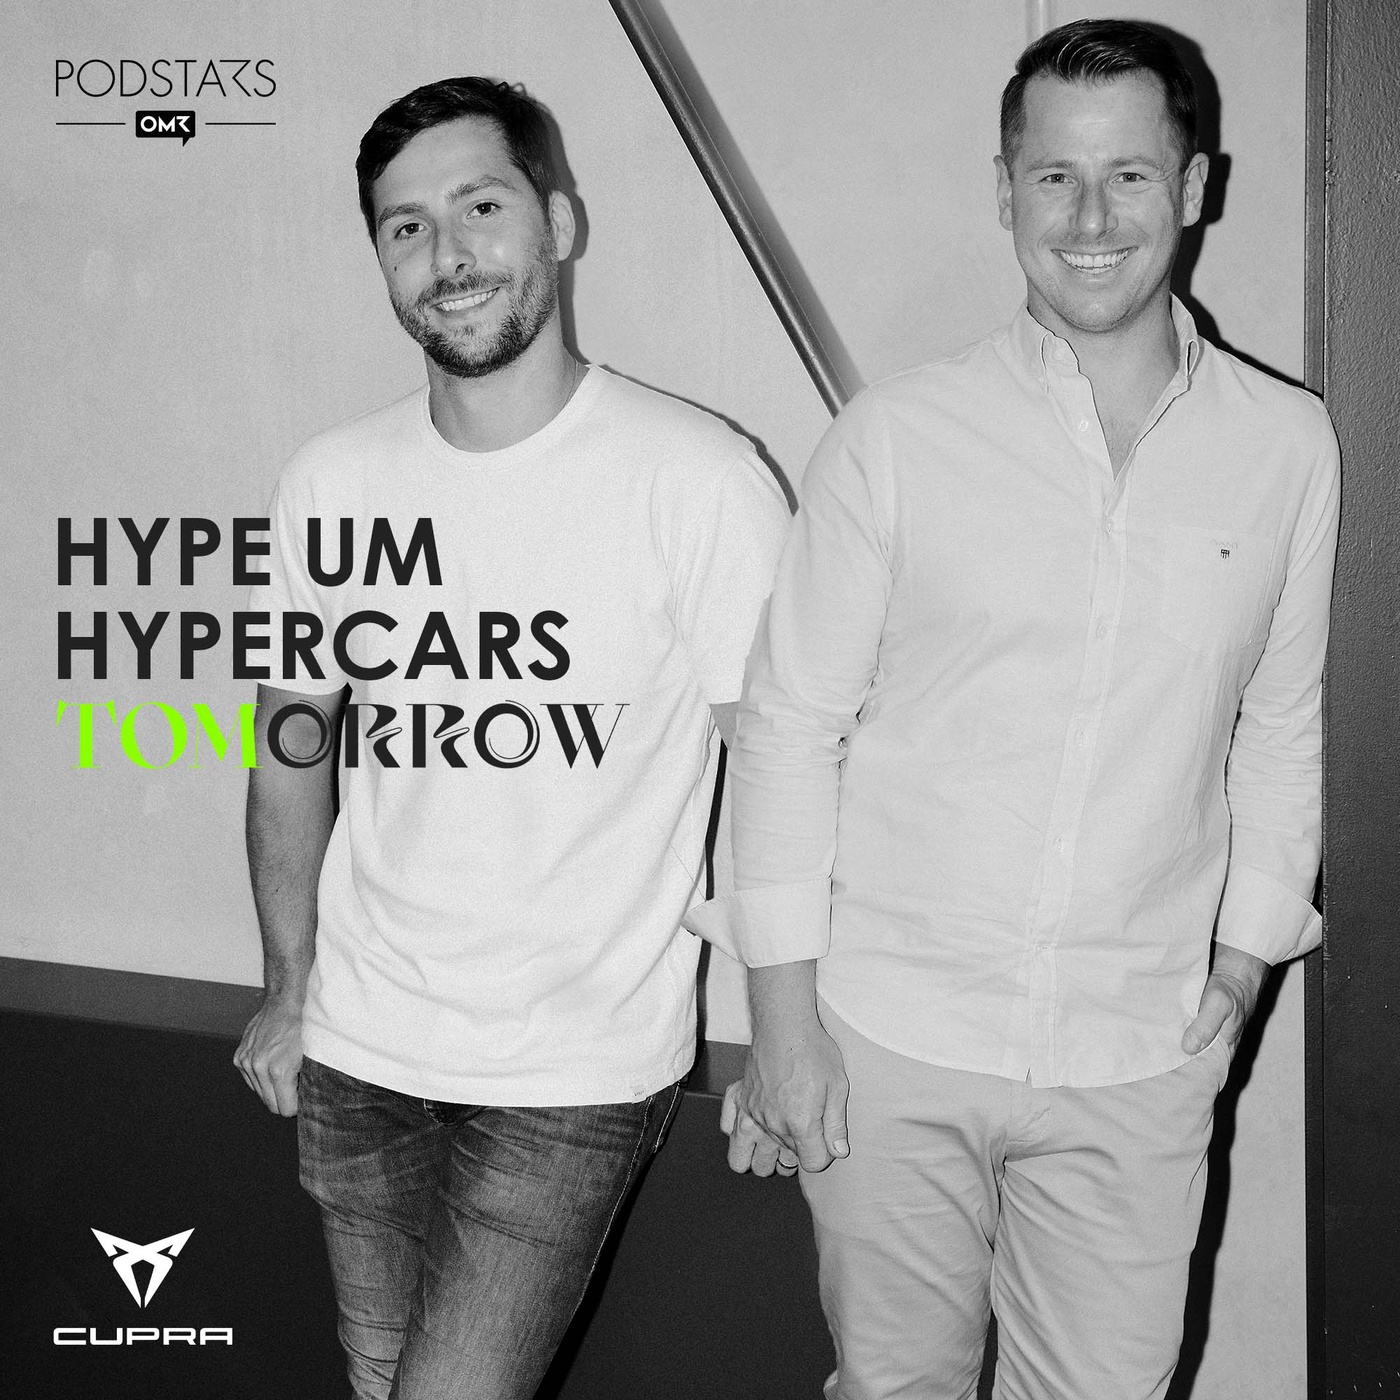 Der neue Hype um Hypercars! Mit Kevin und Sören Maurer, Founder